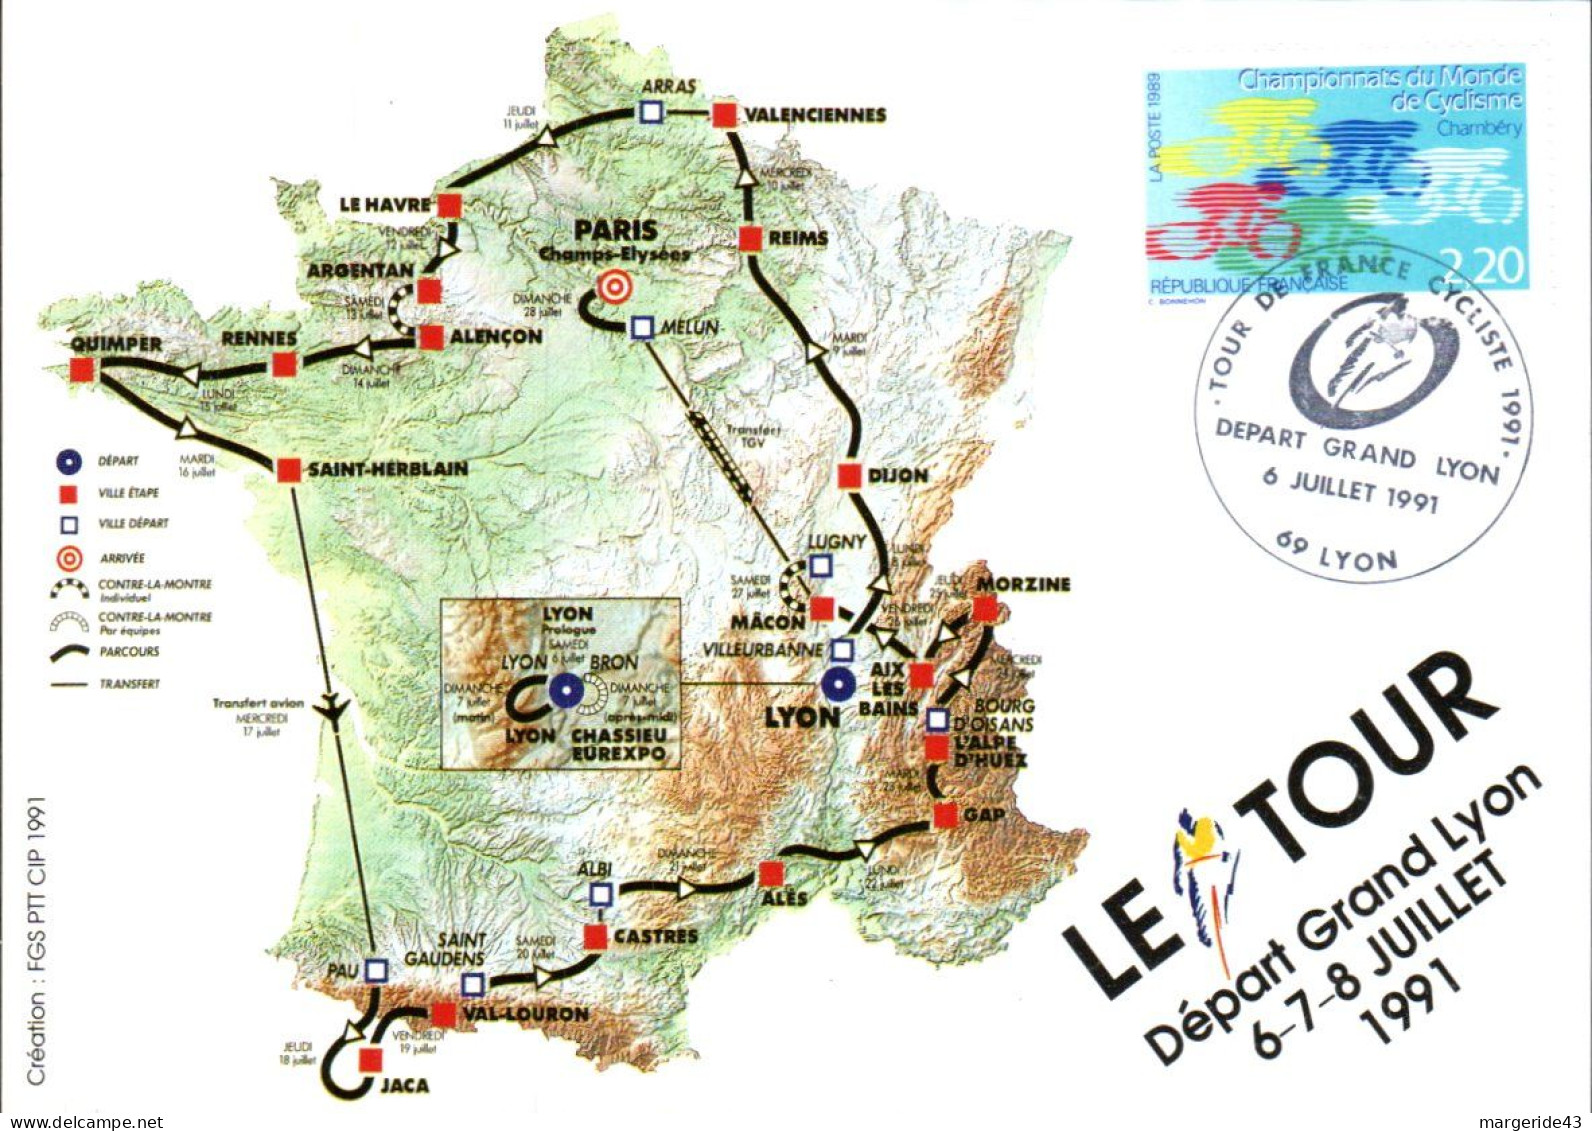 CYCLISME LE TOUR DE FRANCE 1991 - DEPART DU GRAND LYON - Commemorative Postmarks